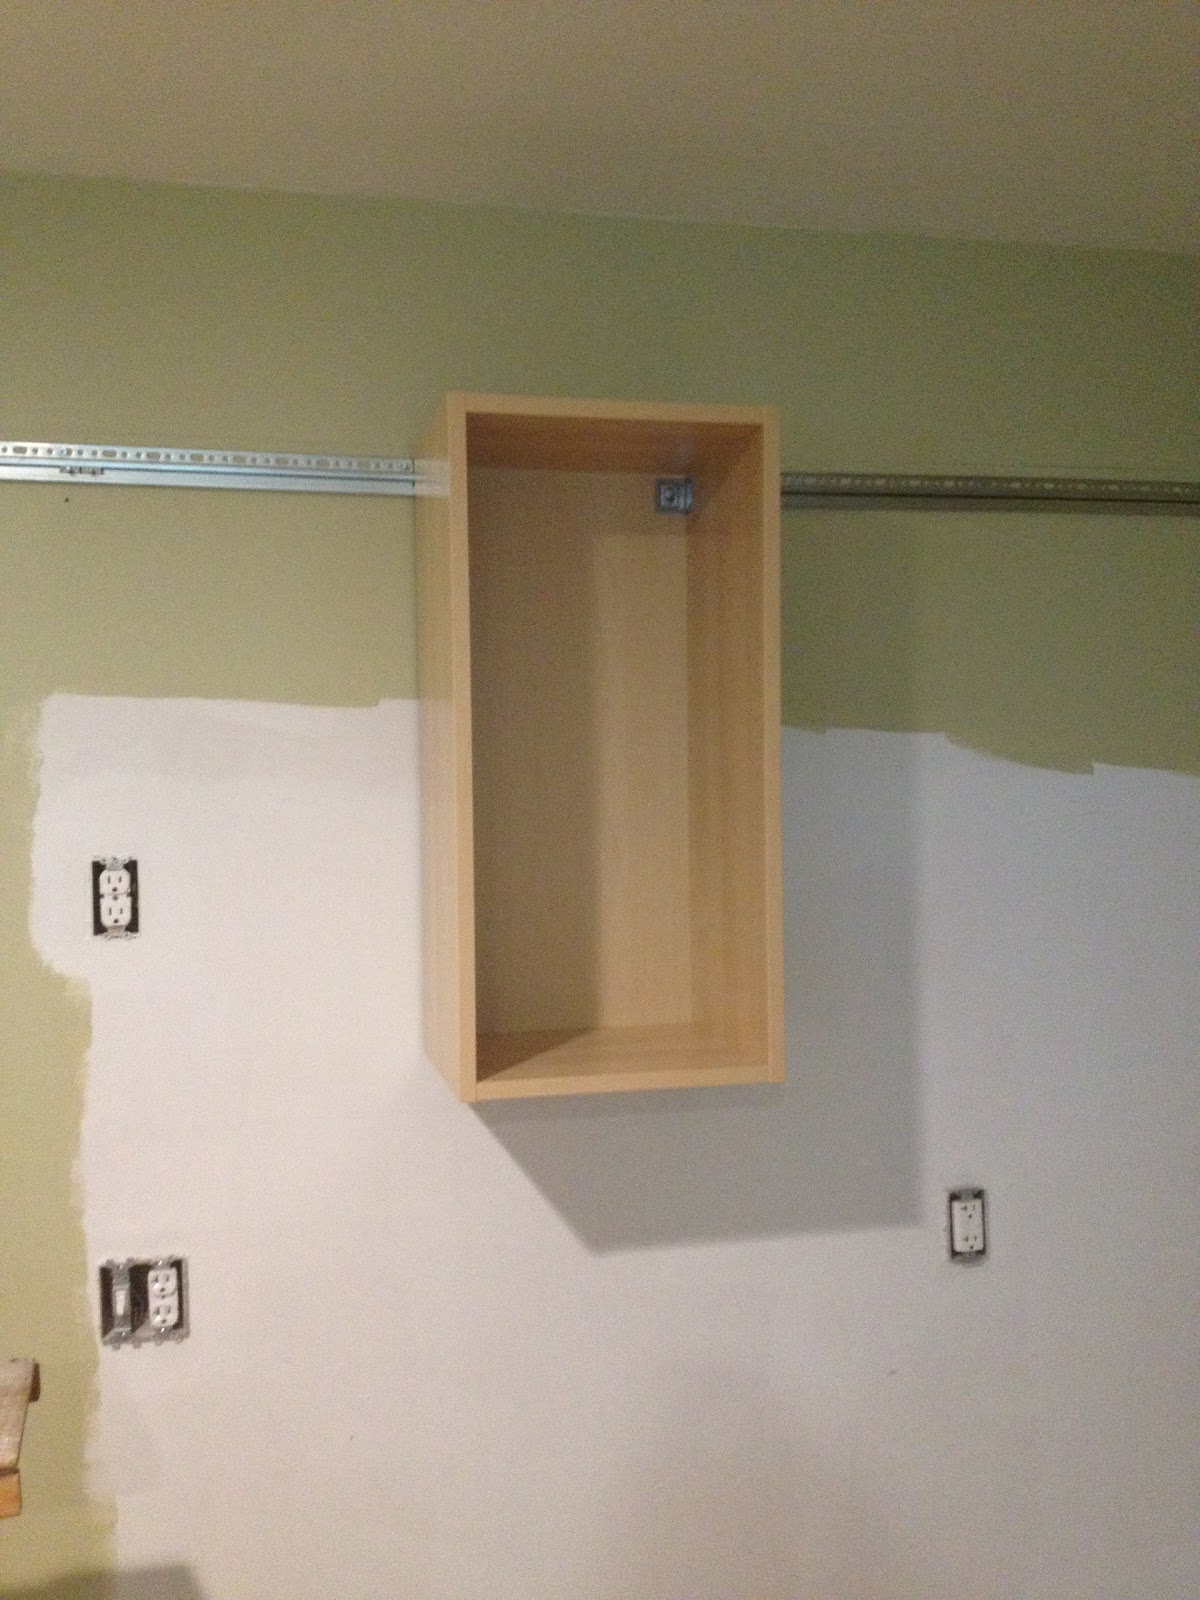 прикрепить кухонные шкафы на стену